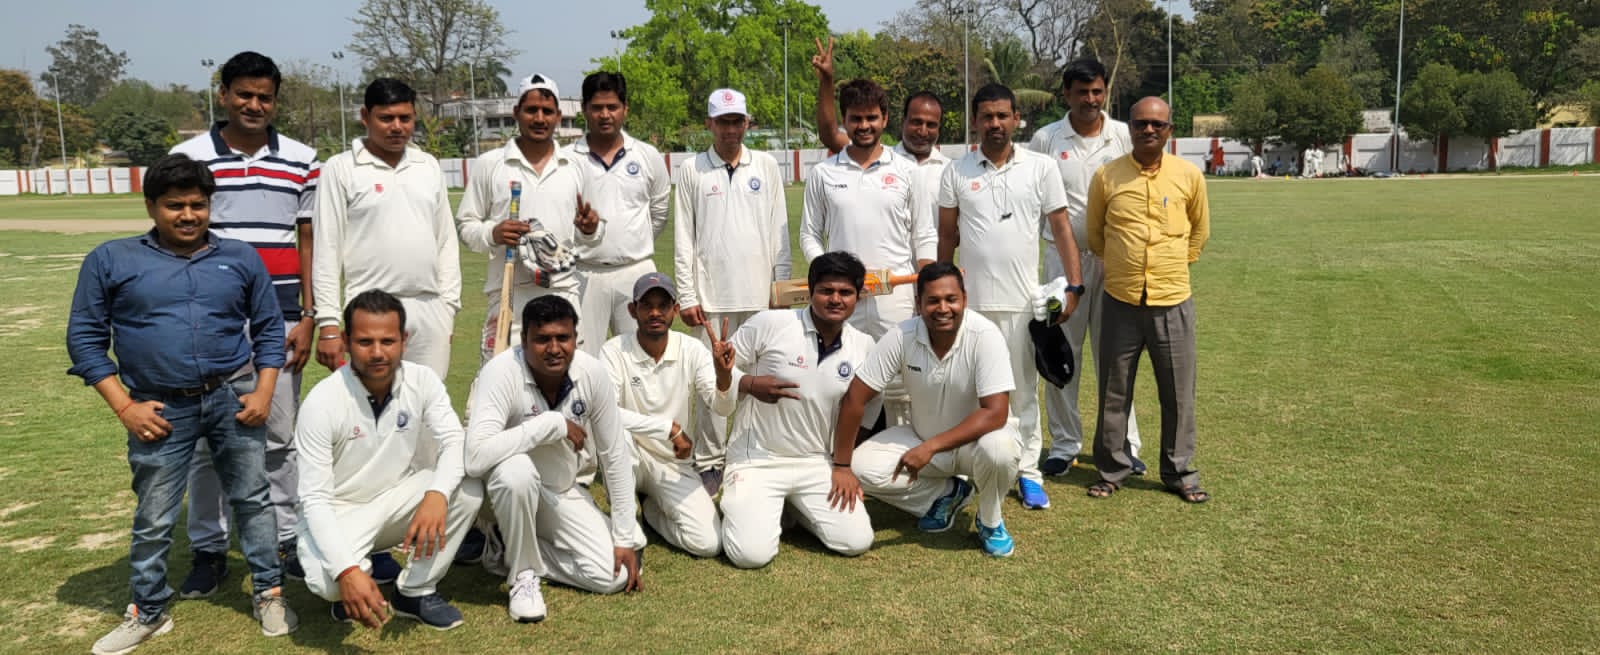 रेलवे स्टेडियम मे आयोजित अंतर विभागीय क्रिकेट प्रतियोगिता का 15 वां मैच टीम एडमीन के नाम-सोनपुर